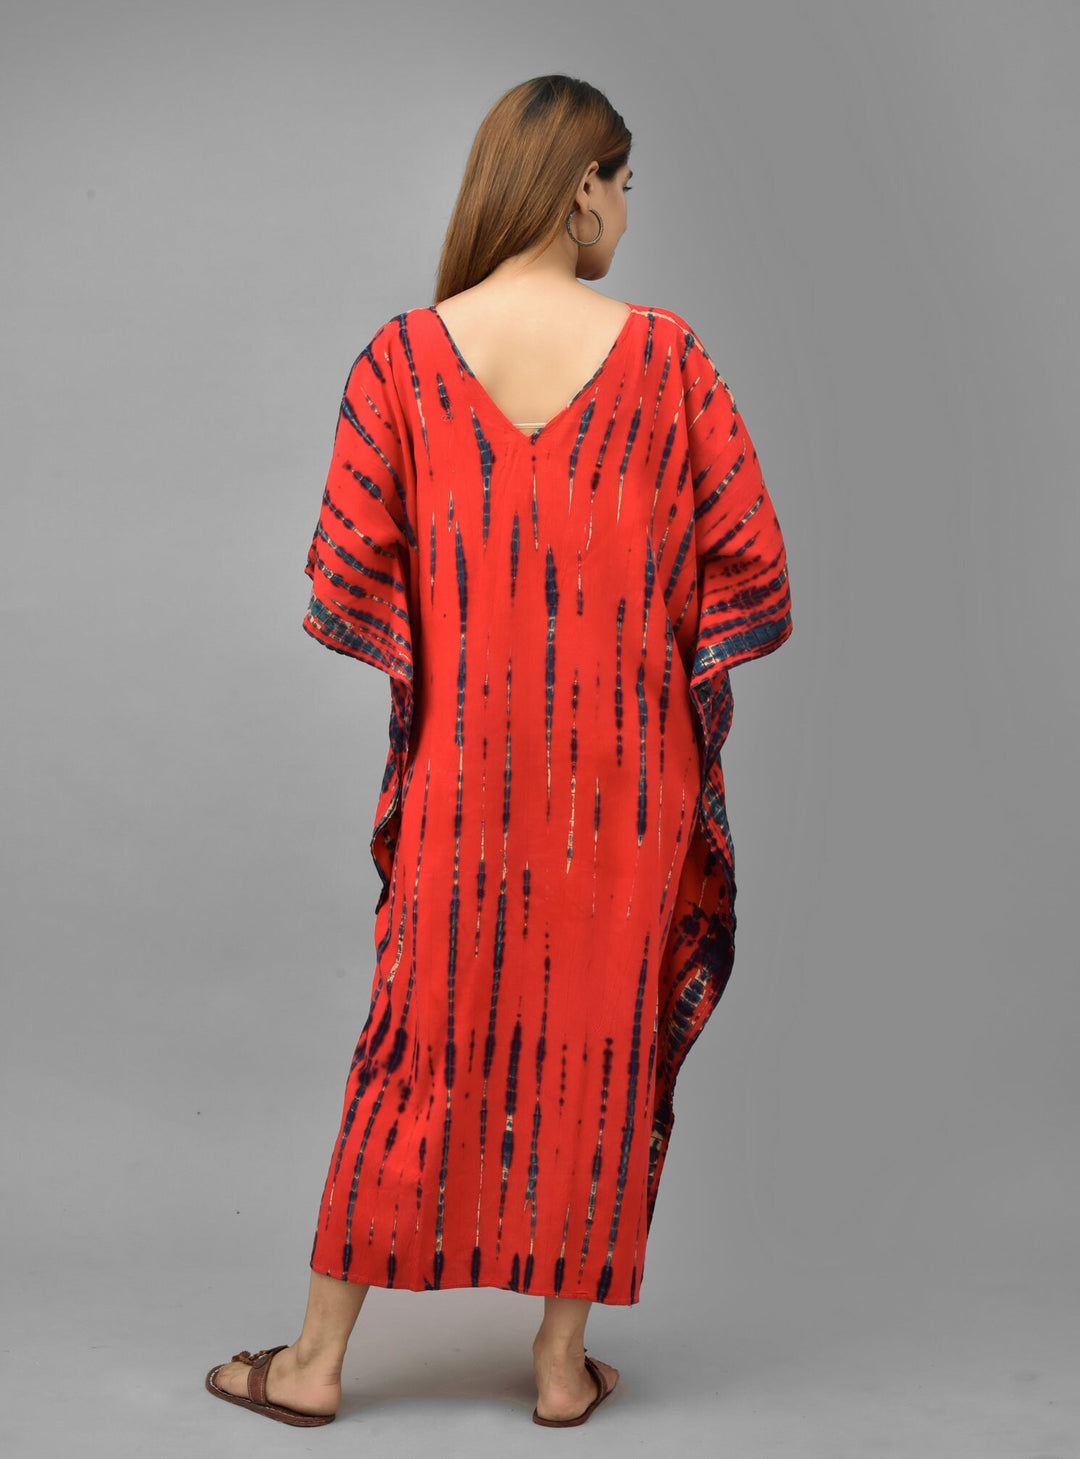 Red Tie Dye Kaftan Dress - Flowy Boho Maxi for Women